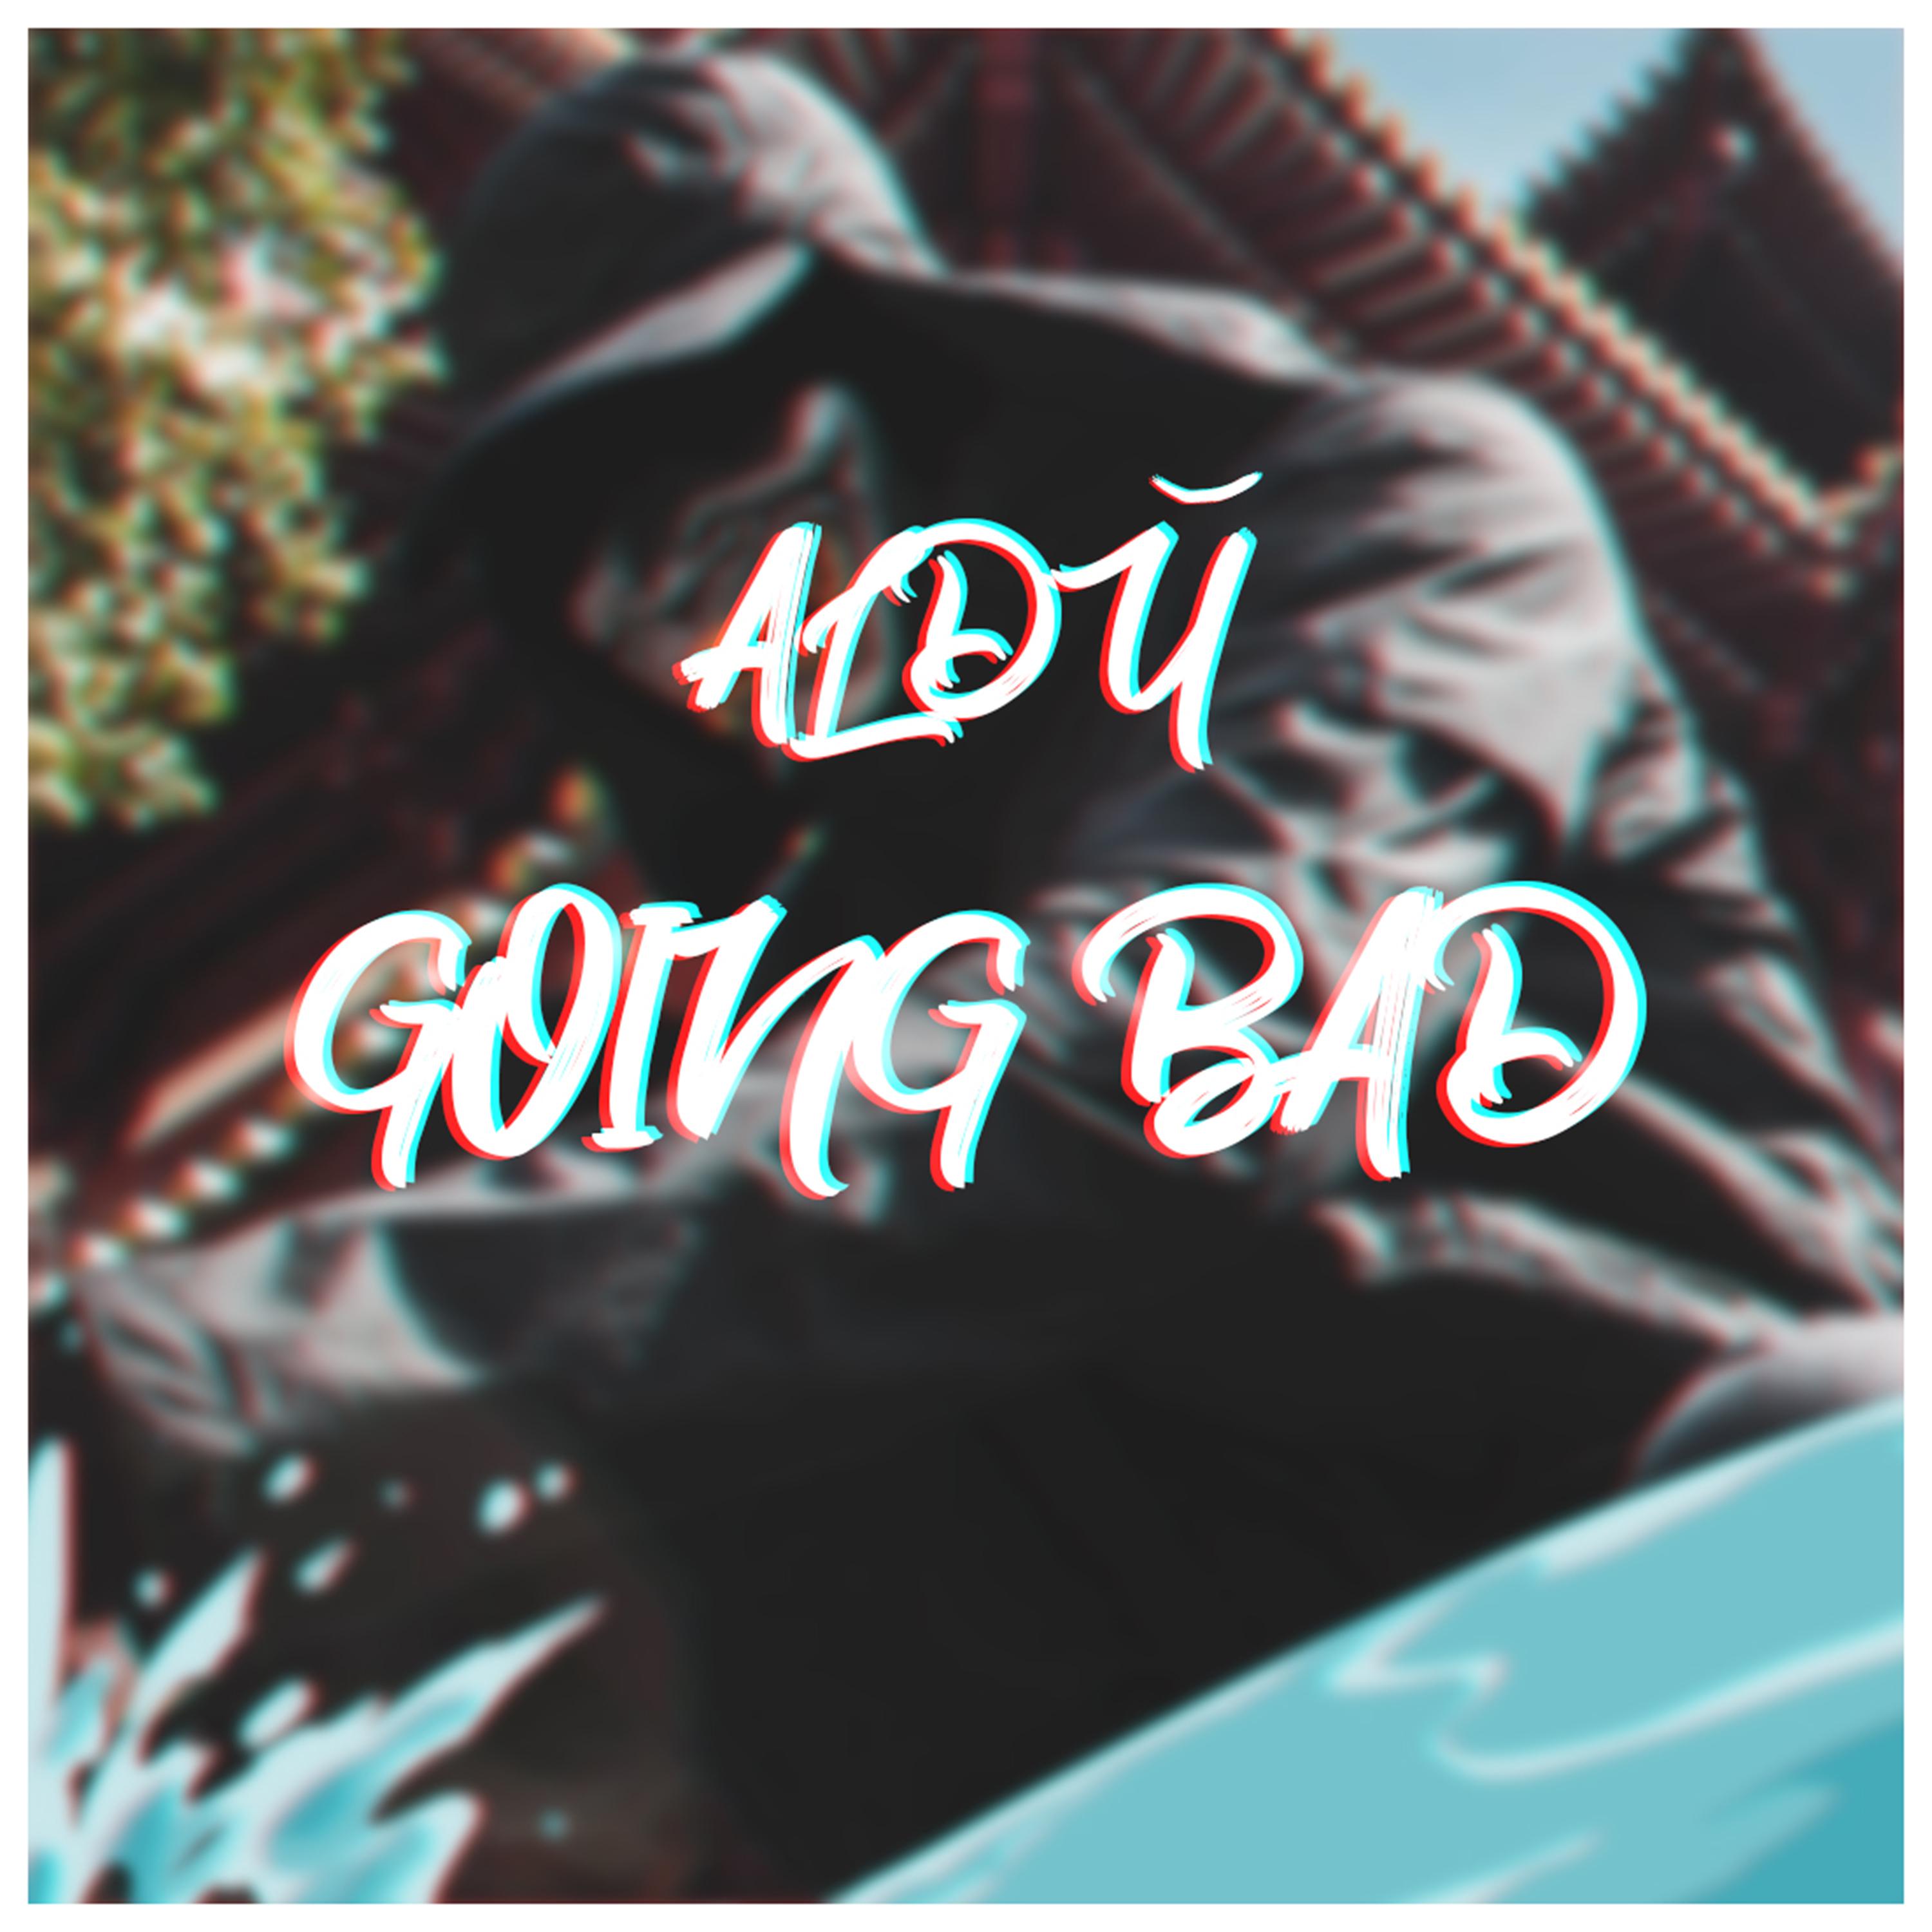 Aldu - Going Bad